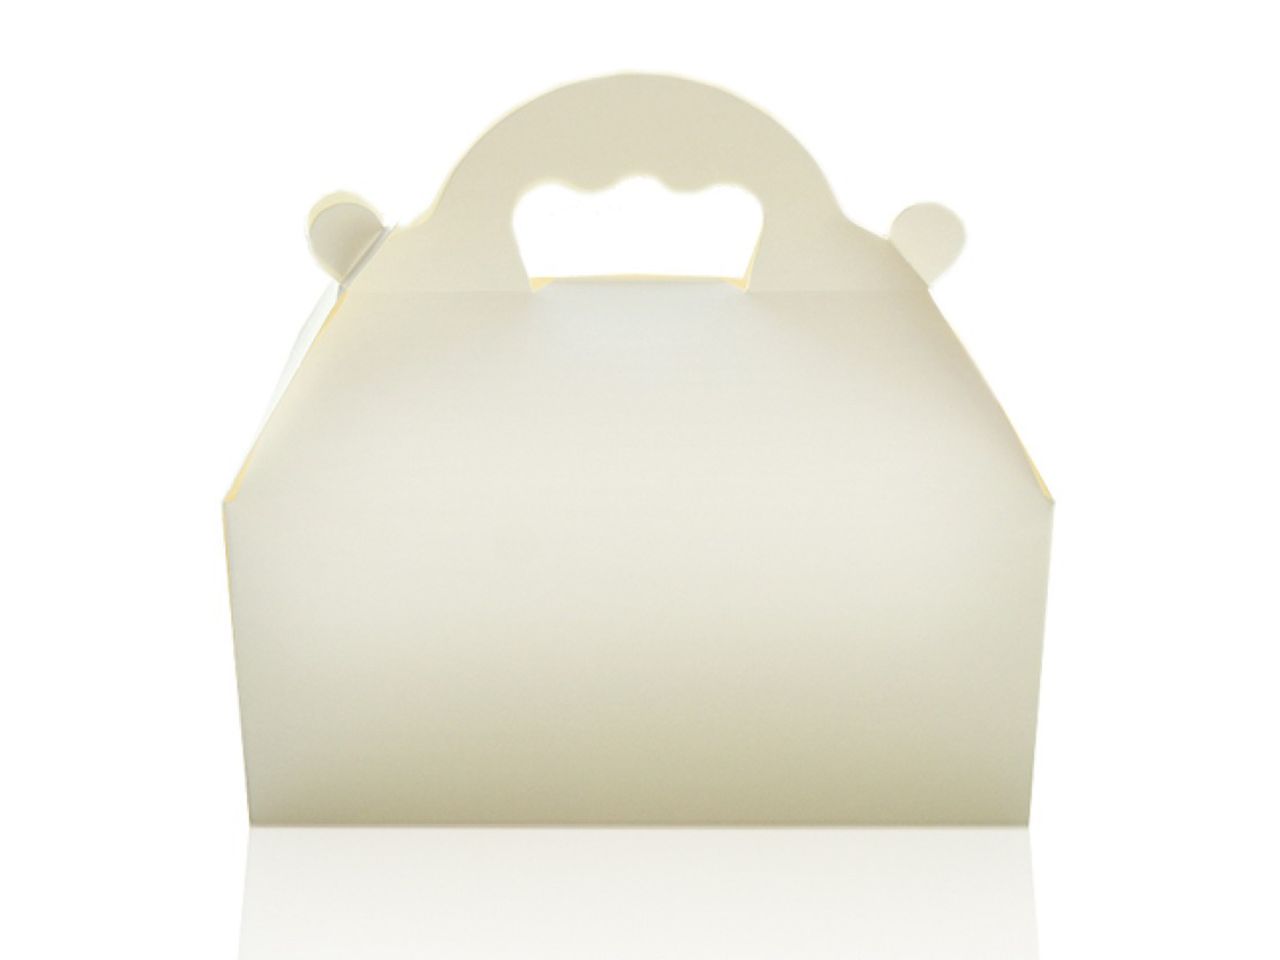 Kuchenbox mit Tragegriff, Weiß, Pappe, 20 x 18 cm